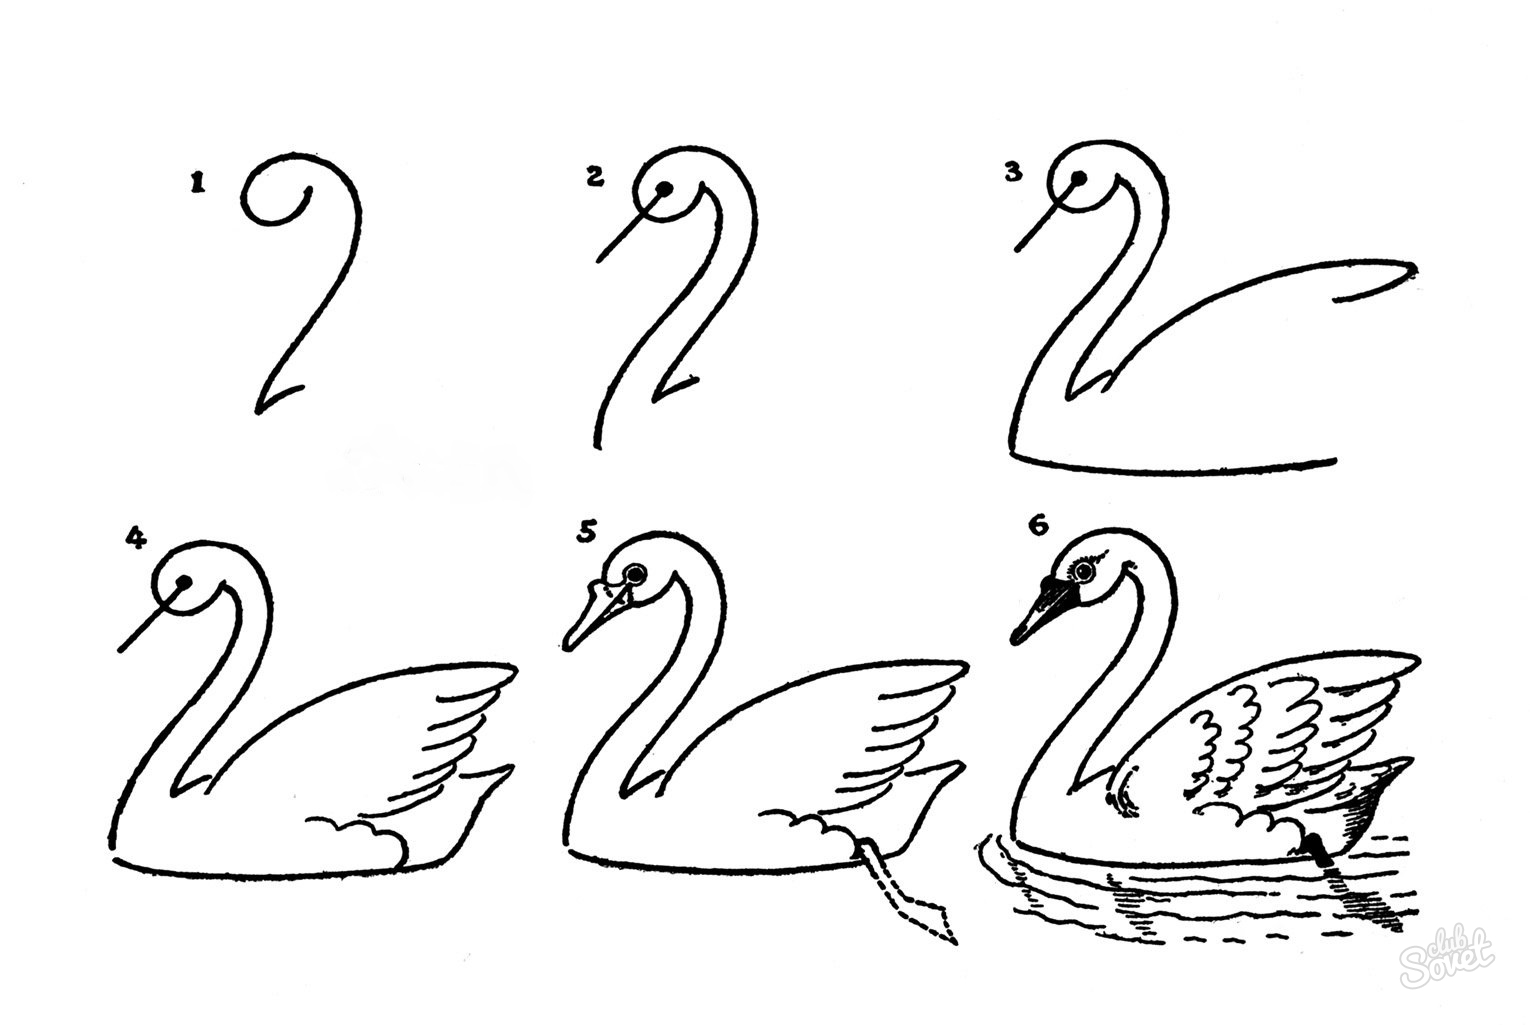 Как рисовать лебедя карандашом поэтапно для начинающих. Как нарисовать лебедя: карандашом поэтапно видео